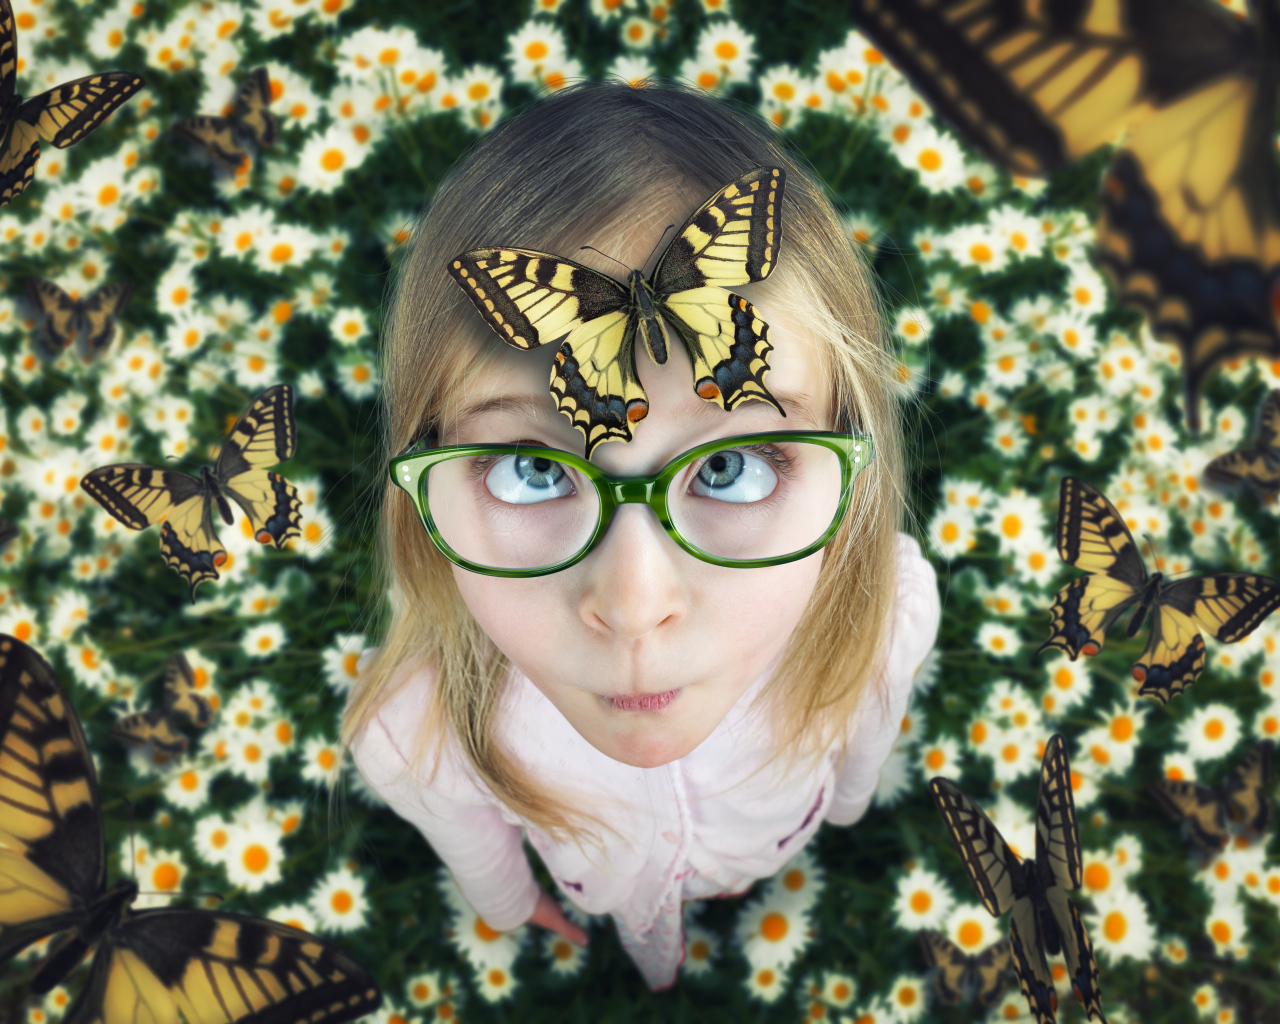 Забавная девочка в очках с бабочкой на голове